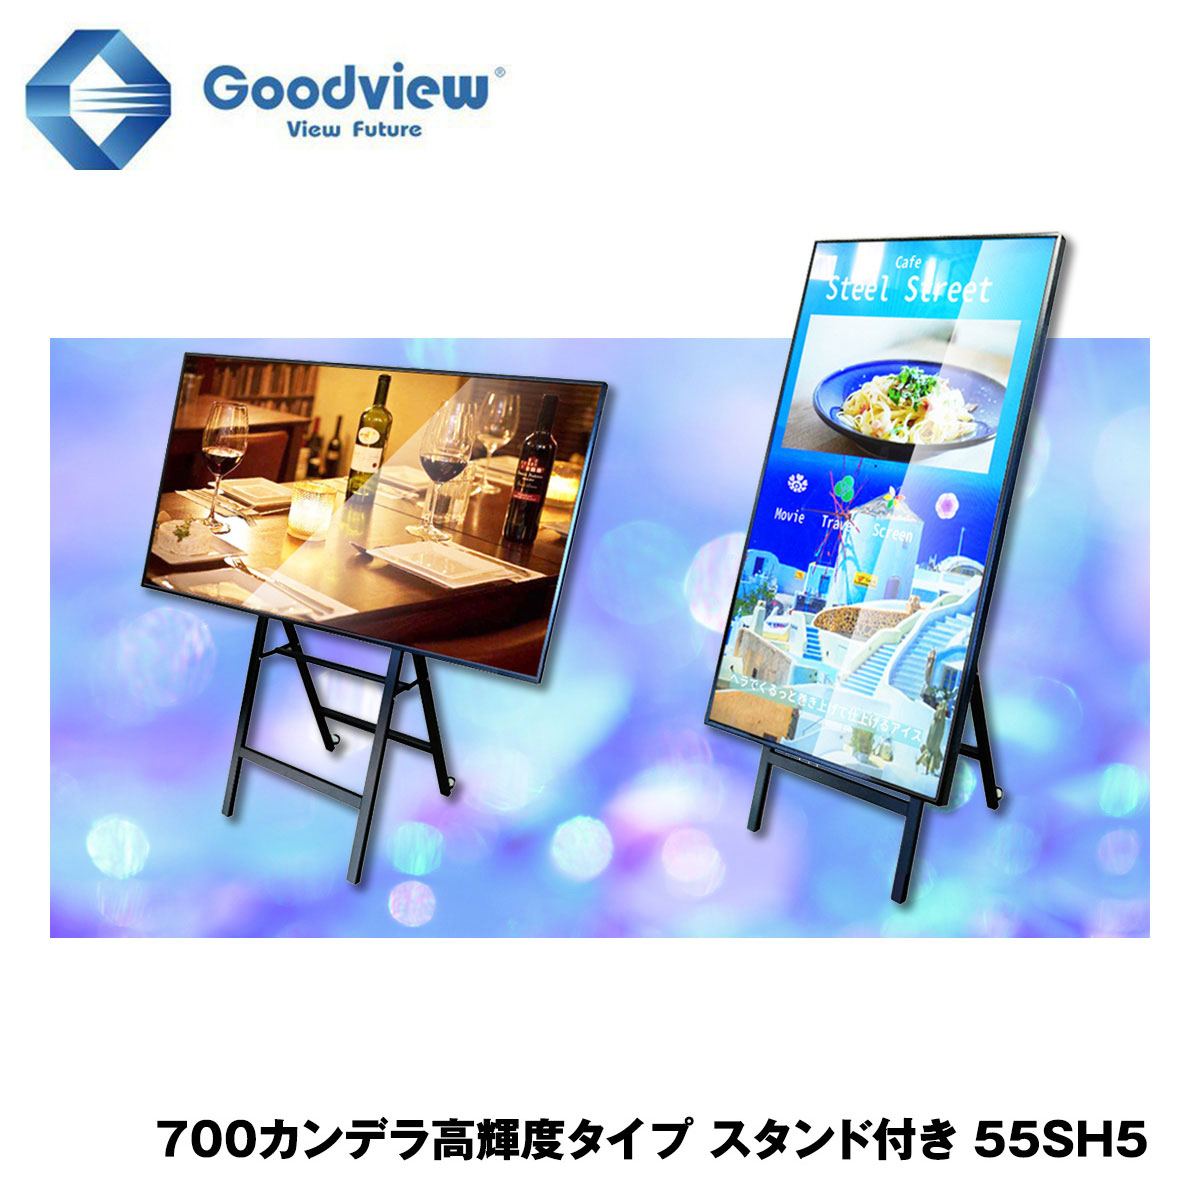 Goodview デジタルサイネージ 高輝度タイプ イーゼルスタンドセット 700カンデラ 55型【55SH5】